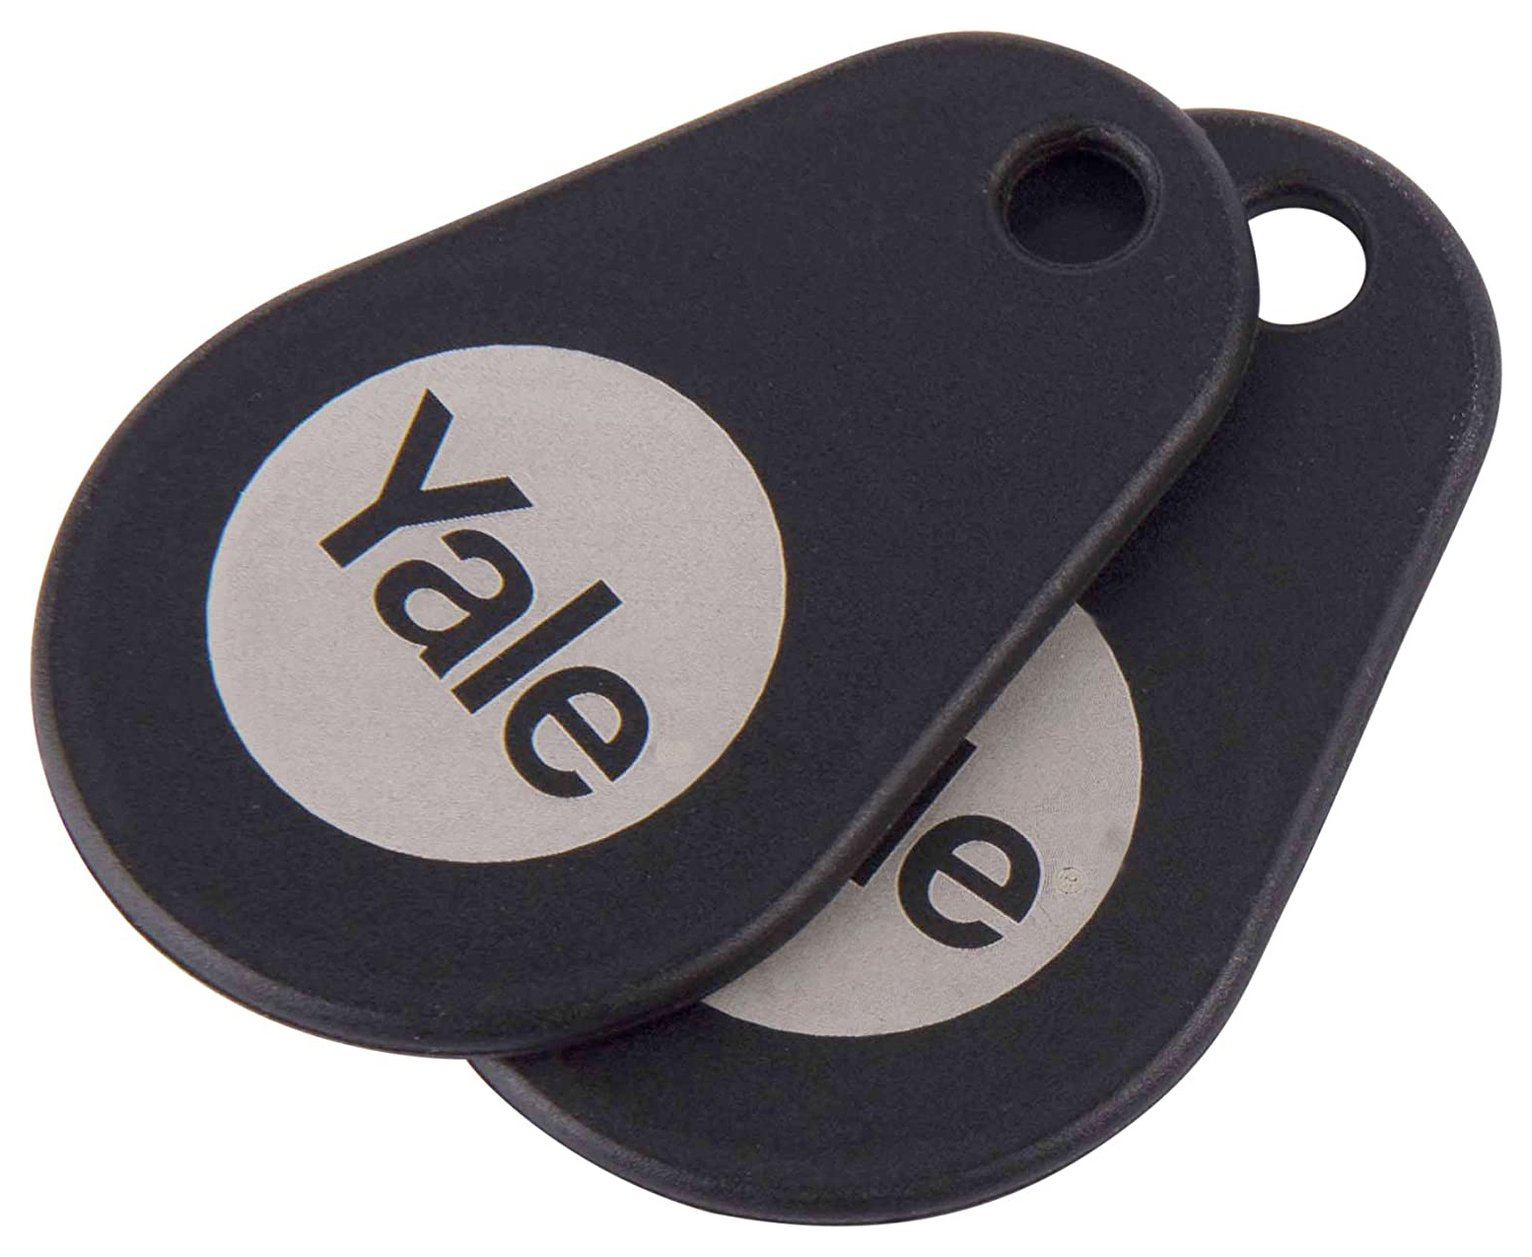 Yale Smart Door Lock Key Tag - 2 Pack